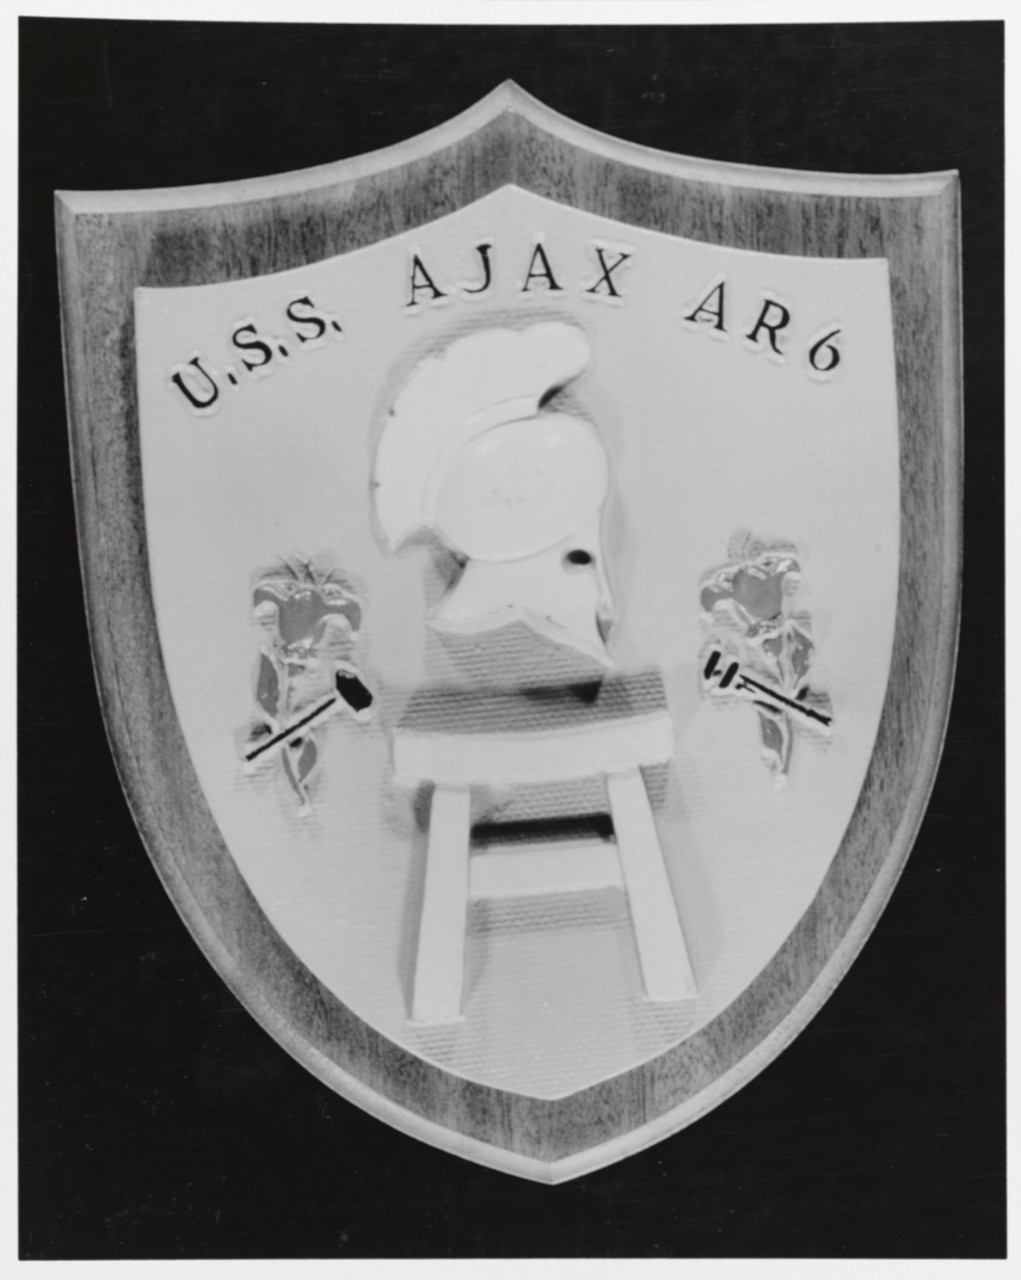 Insignia: USS AJAX (AR-6)